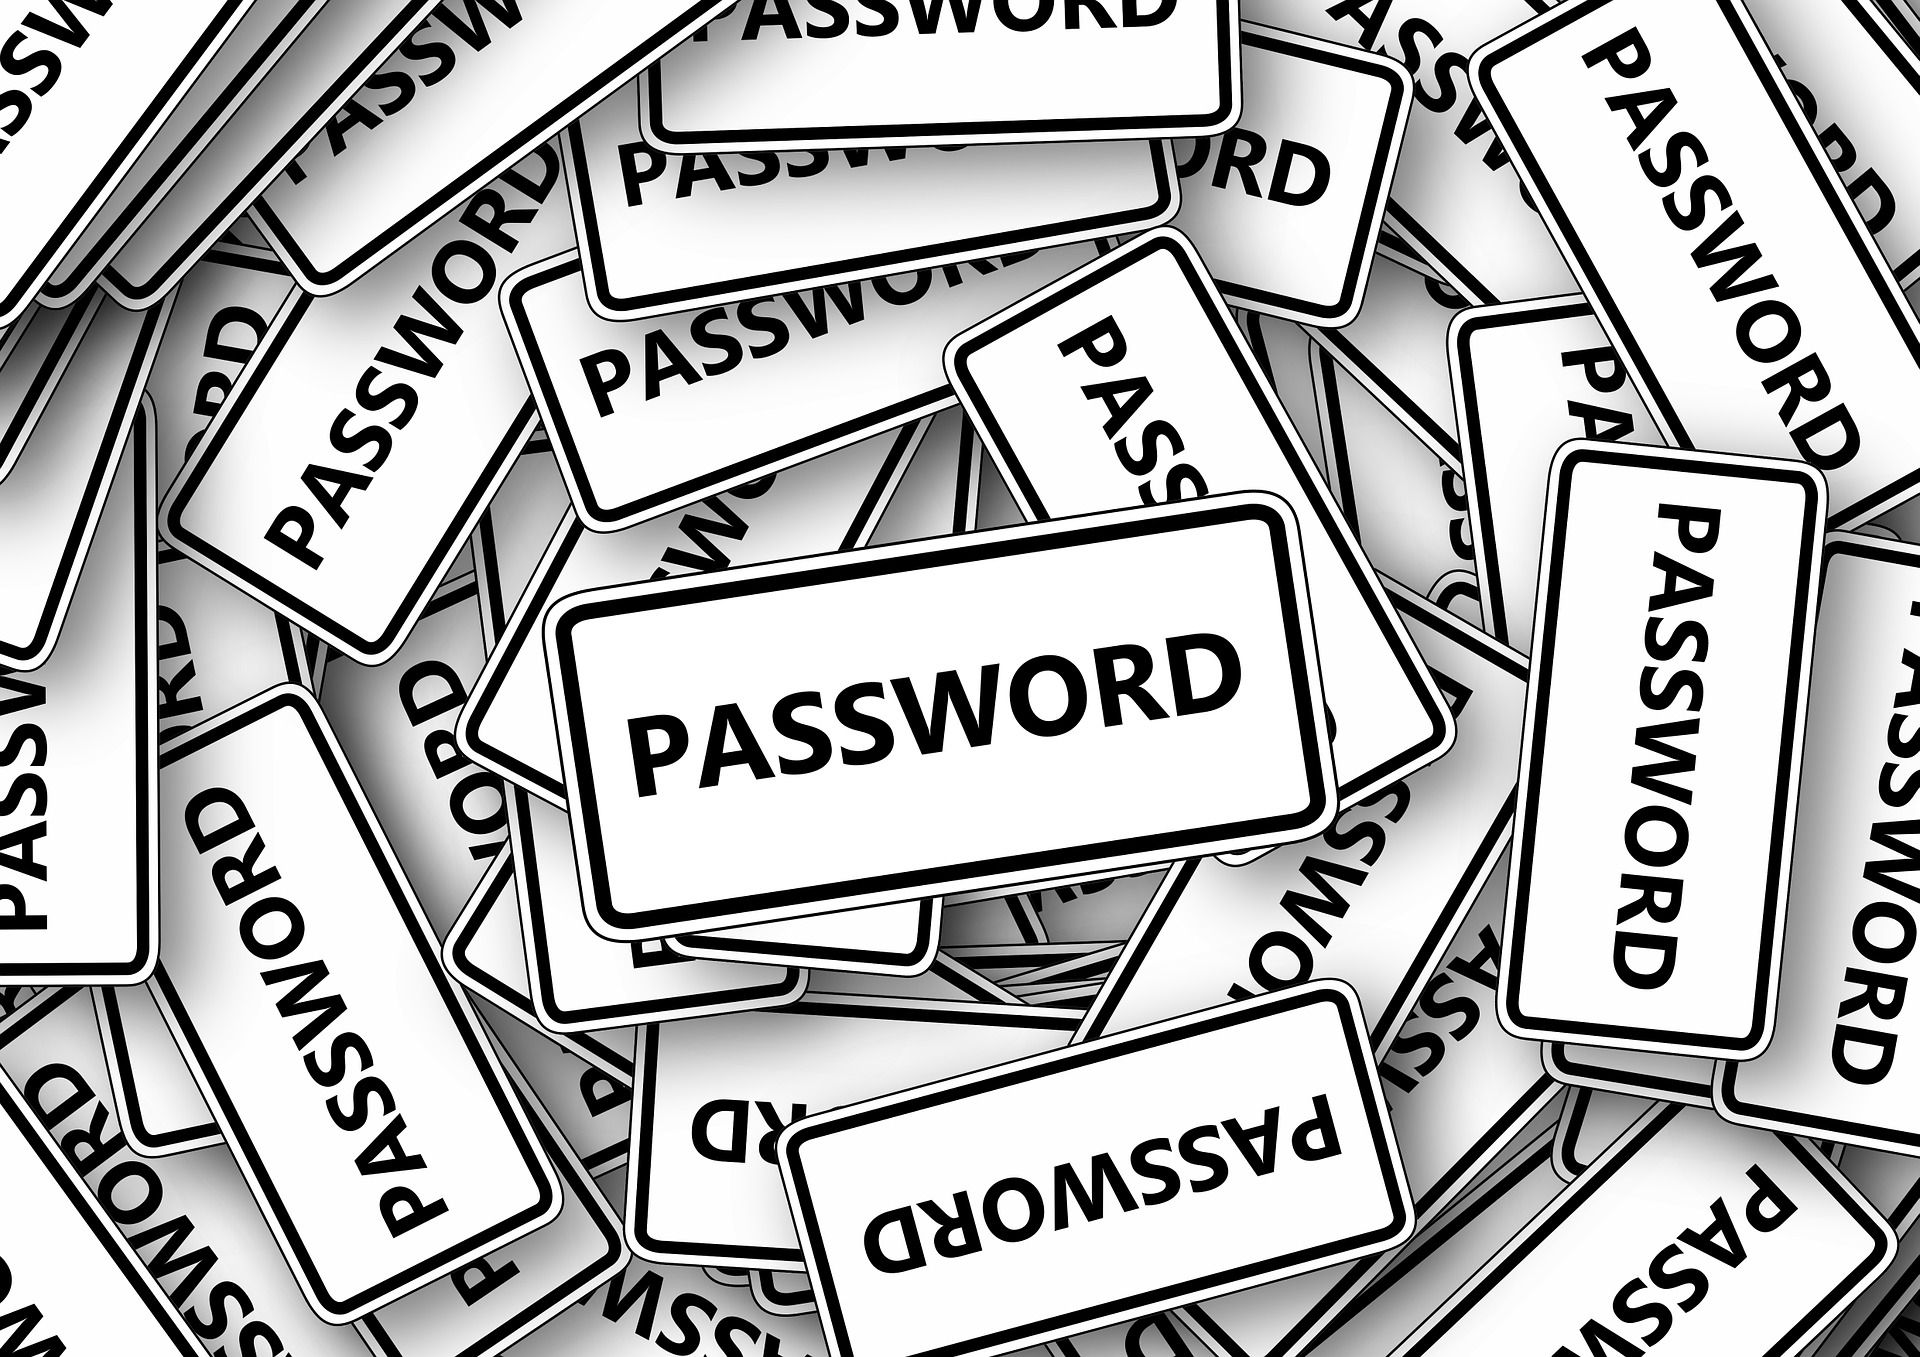 Many online passwords